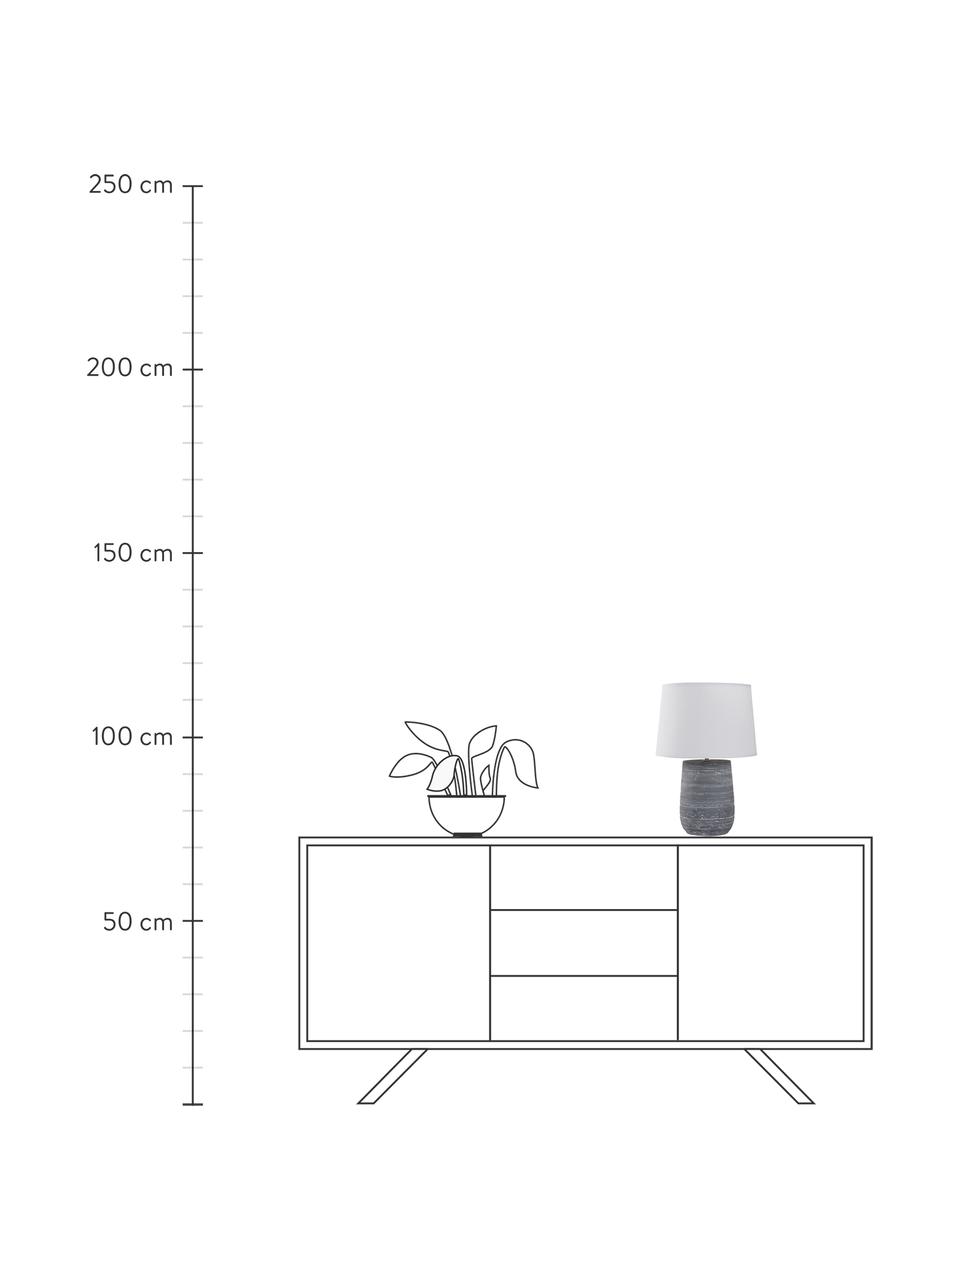 Moderne Tischlampe Clemente mit Betonfuß, Lampenschirm: Baumwolle, Lampenfuß: Beton, Weiß, Grau, Ø 29 x H 42 cm